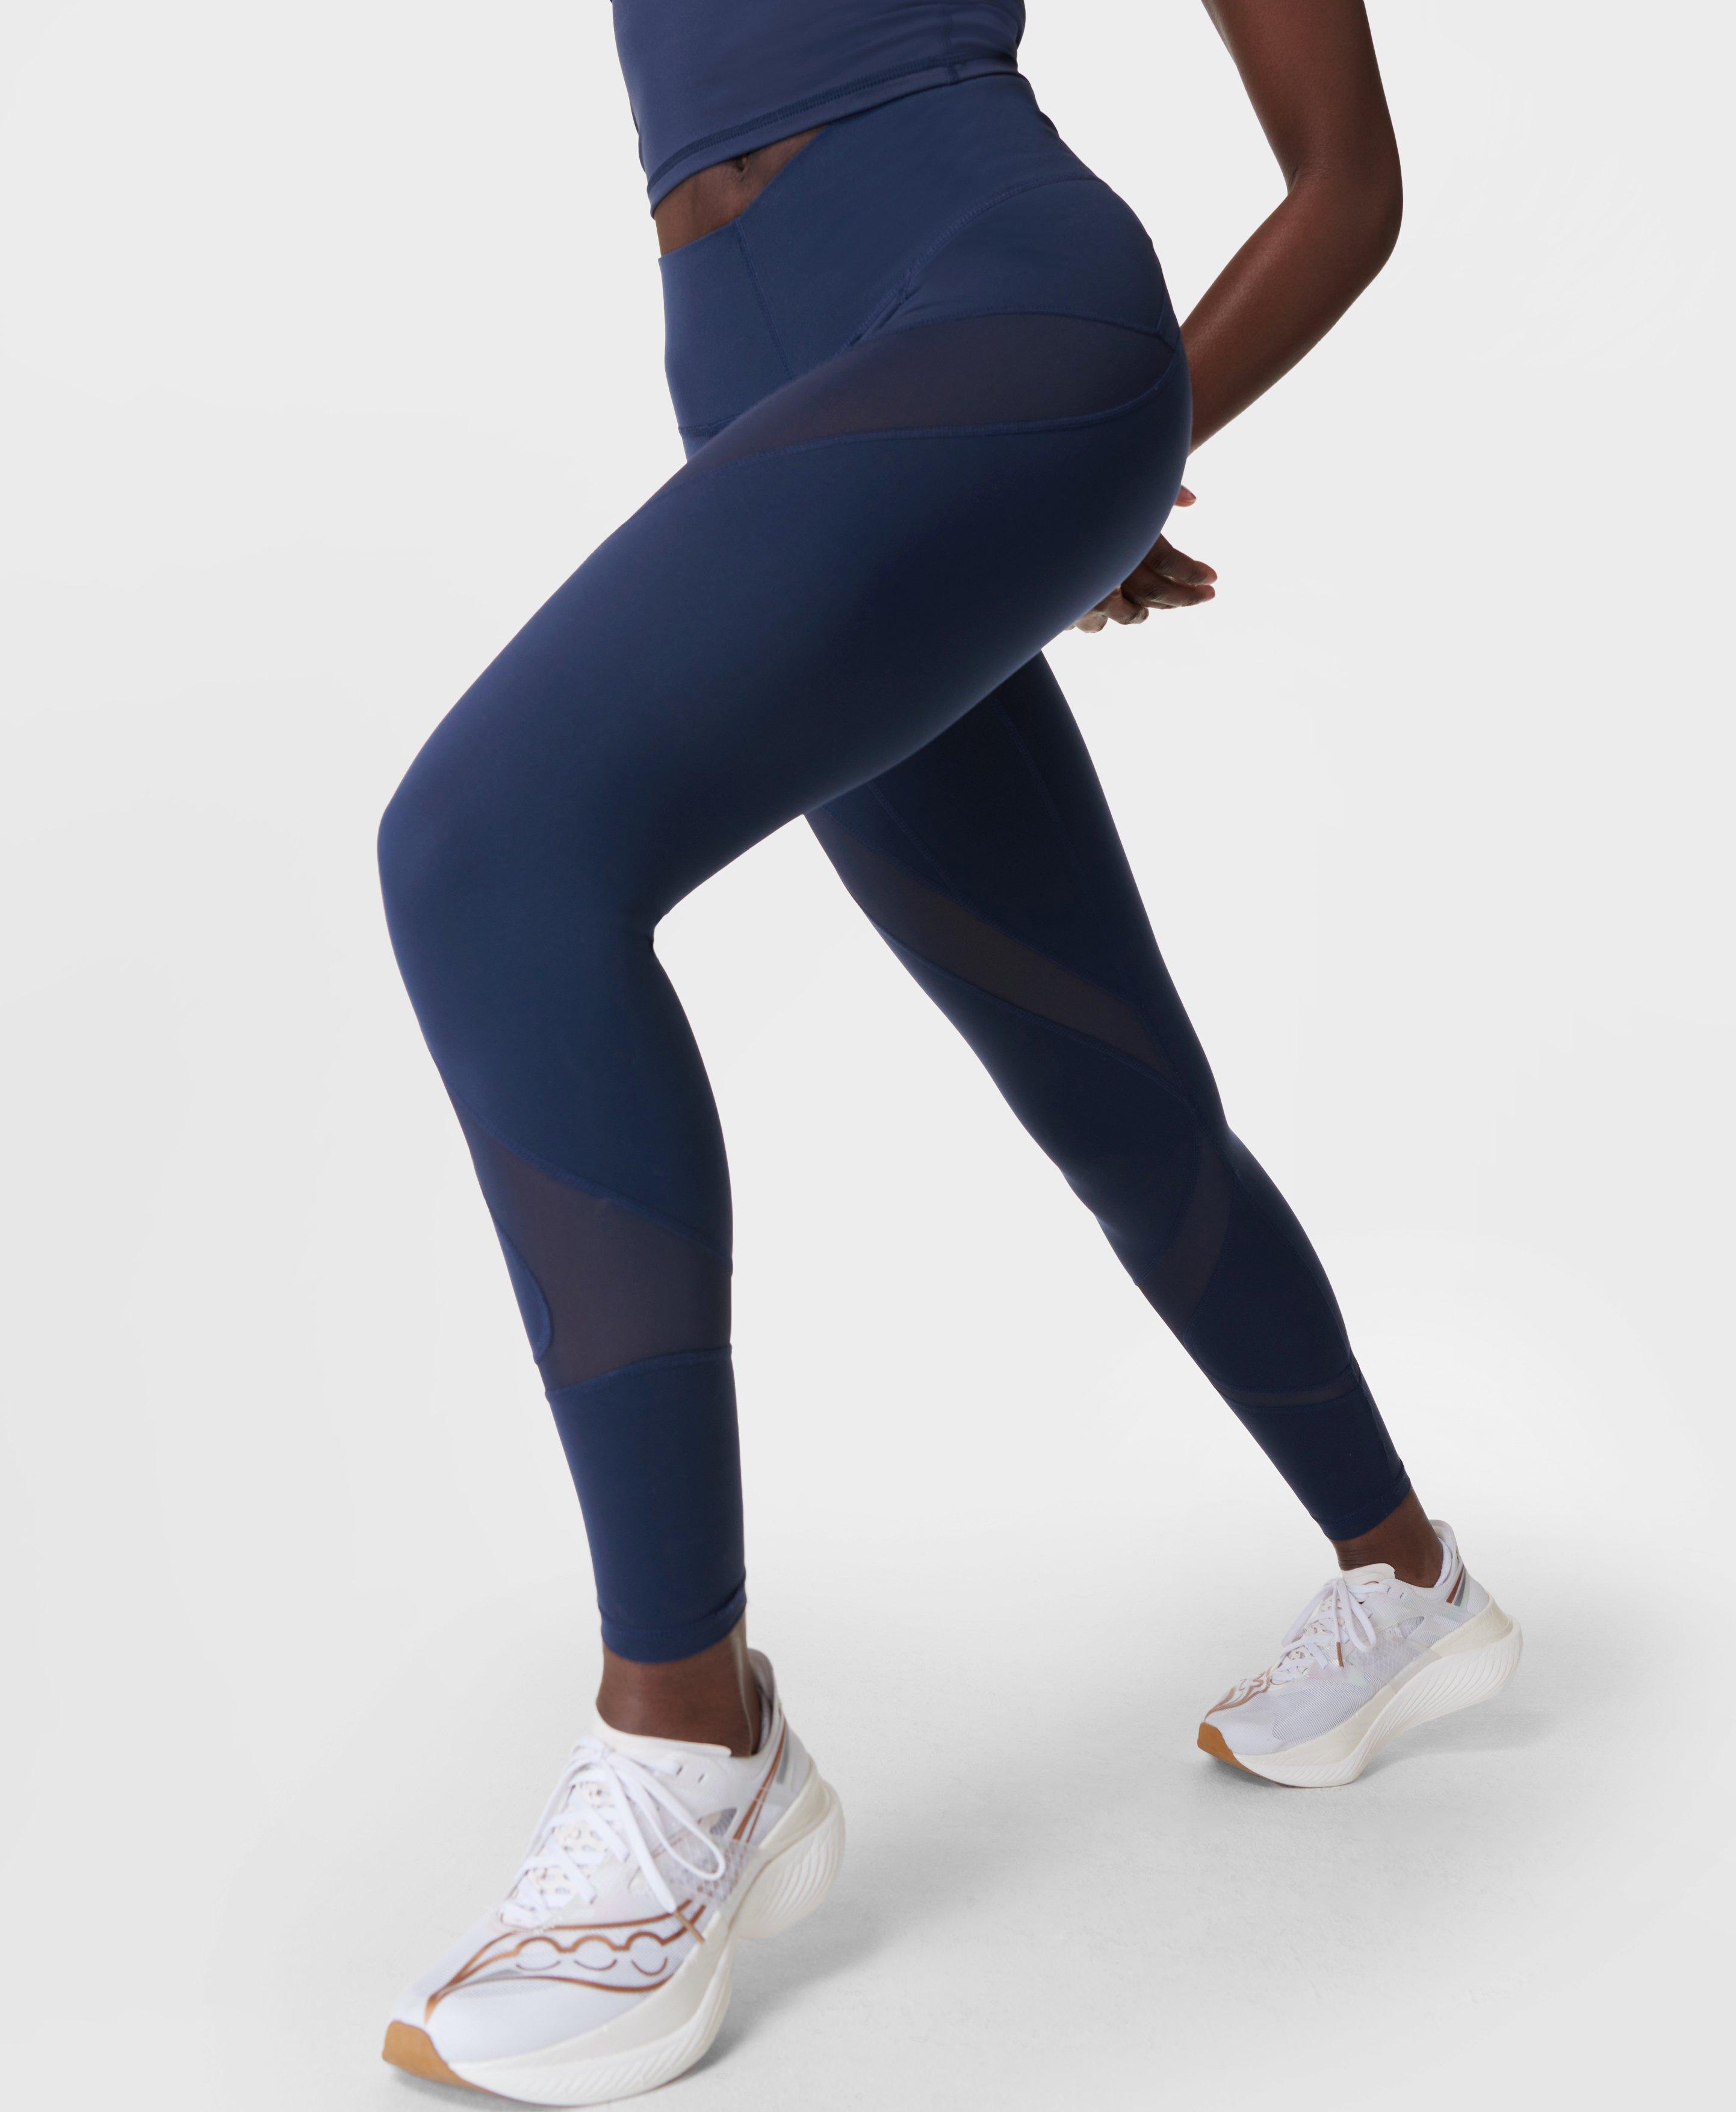 Gymshark Socks  Womens Trainer Socks 3pk Denim Teal/Salt Blue